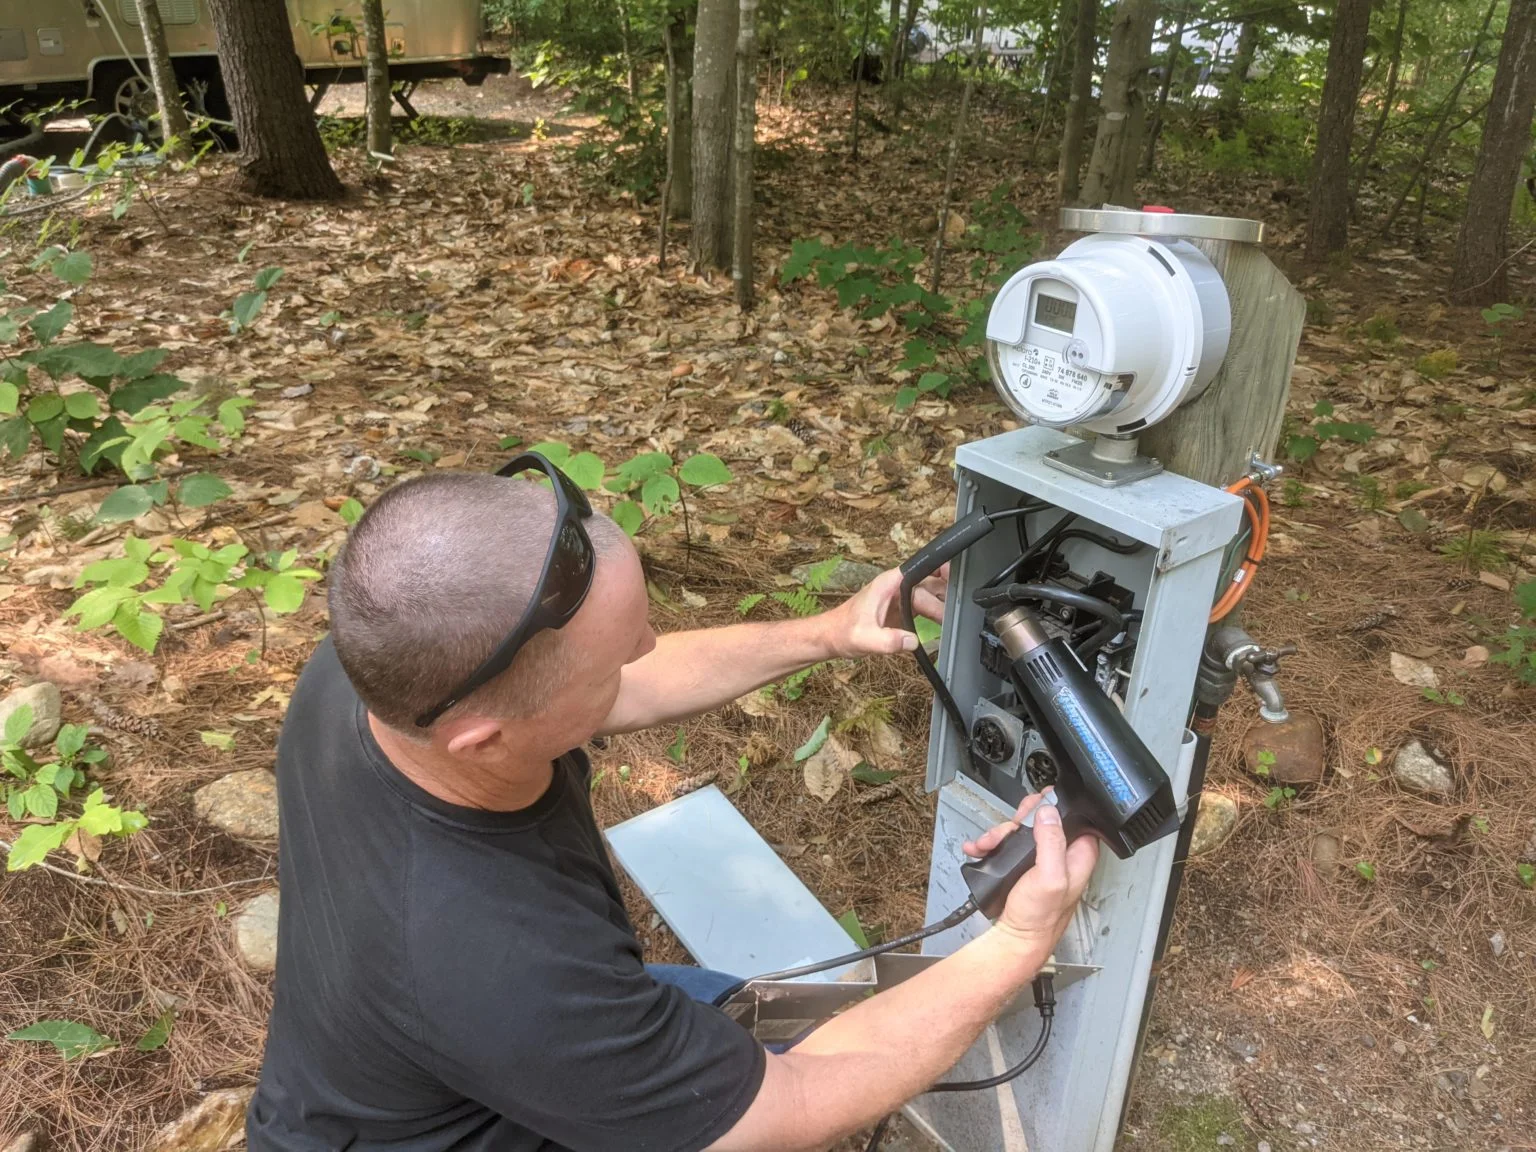 Man working on Utility Meter